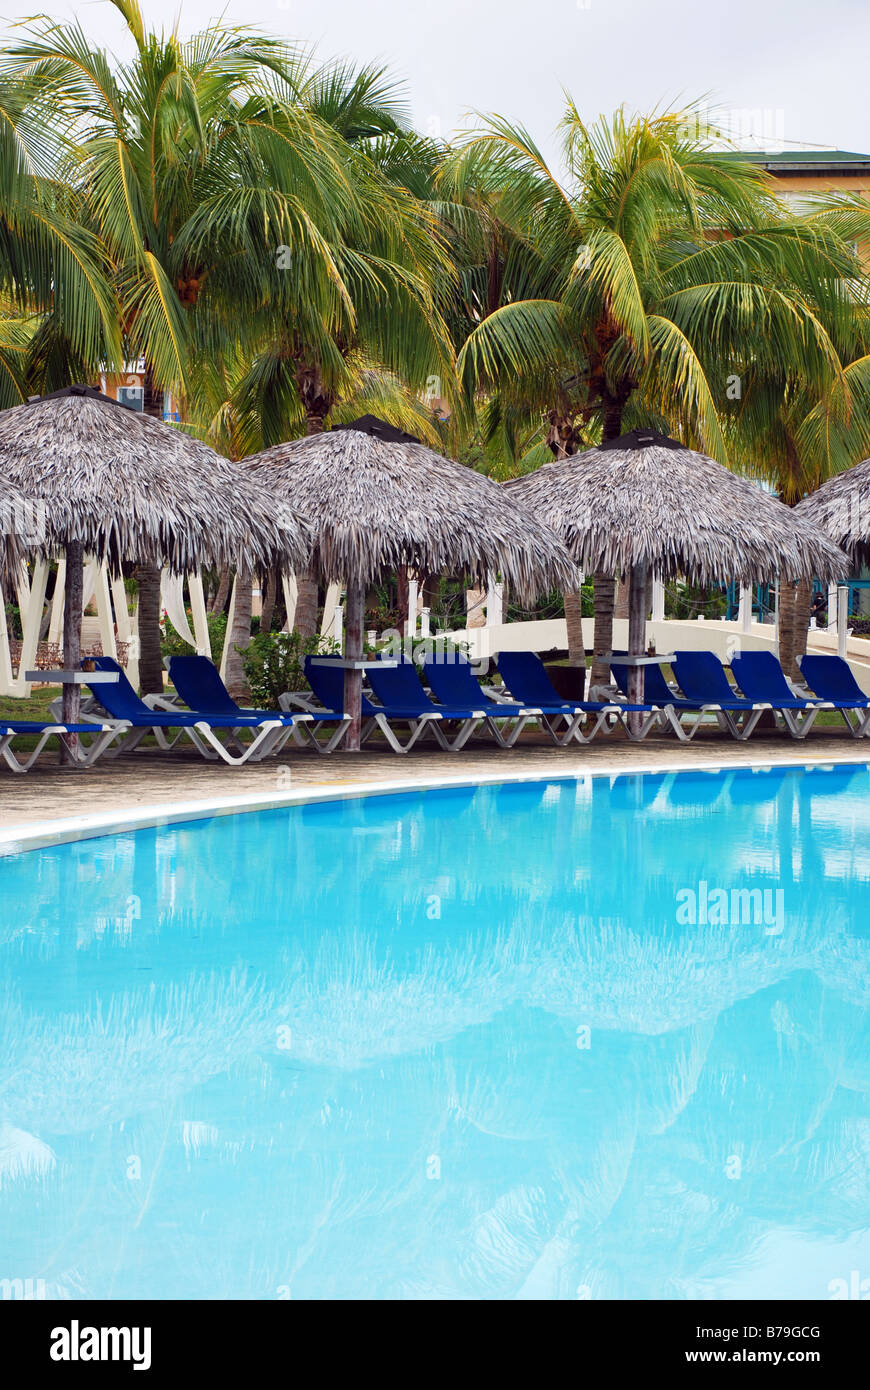 Piscina tropical con palmeras de coco del reflejo en el agua Foto de stock